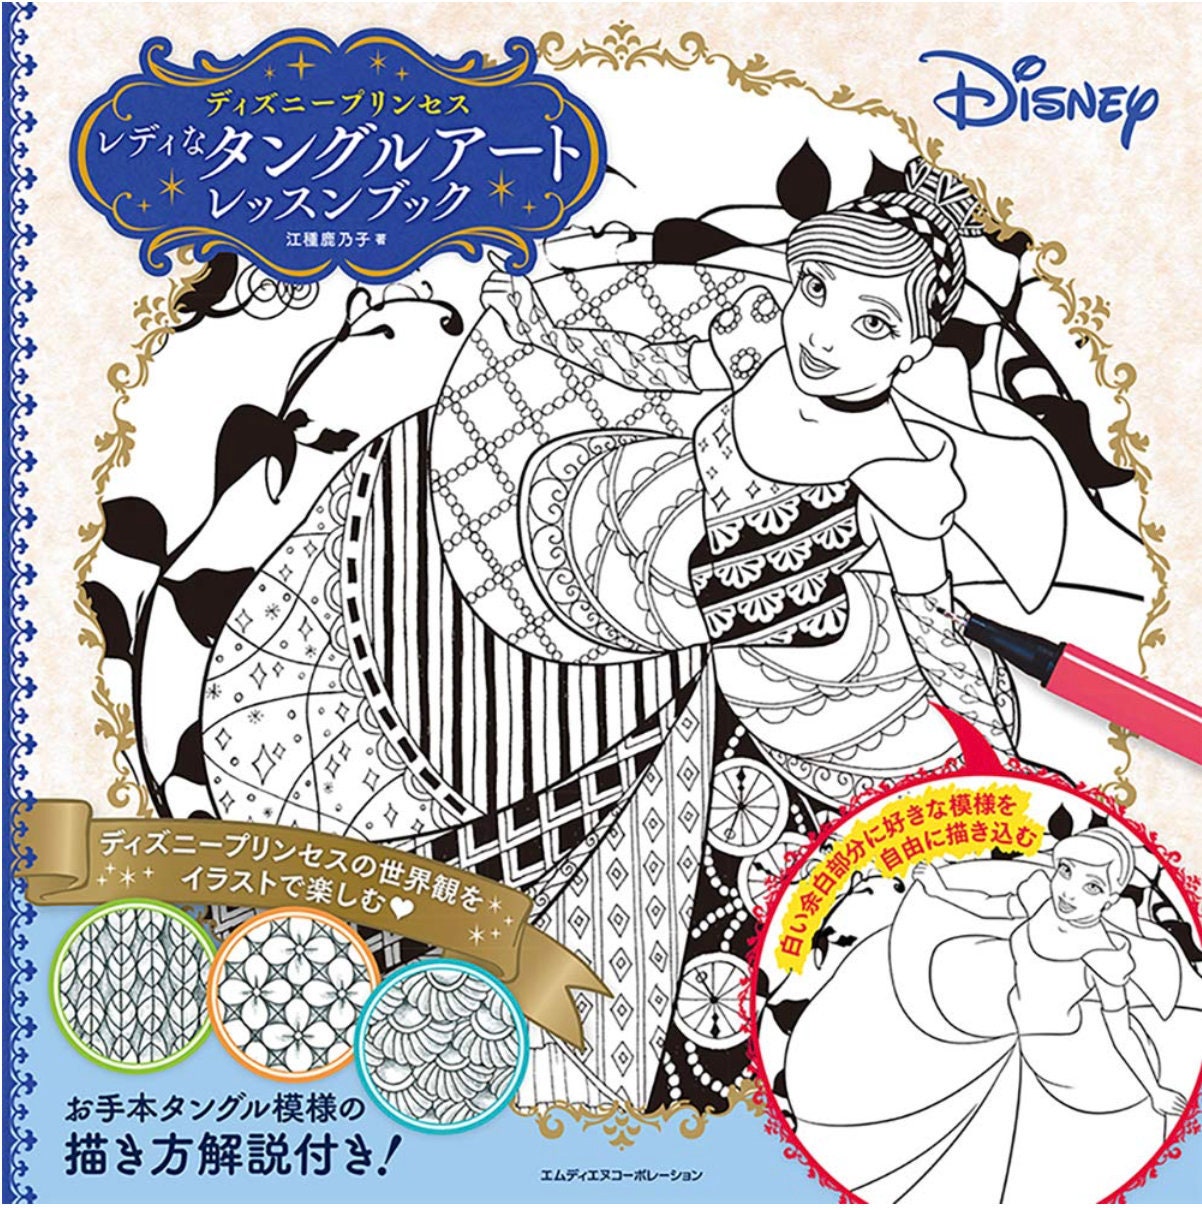 Disney Princesses - : Disney princesse coloriage a,b,c